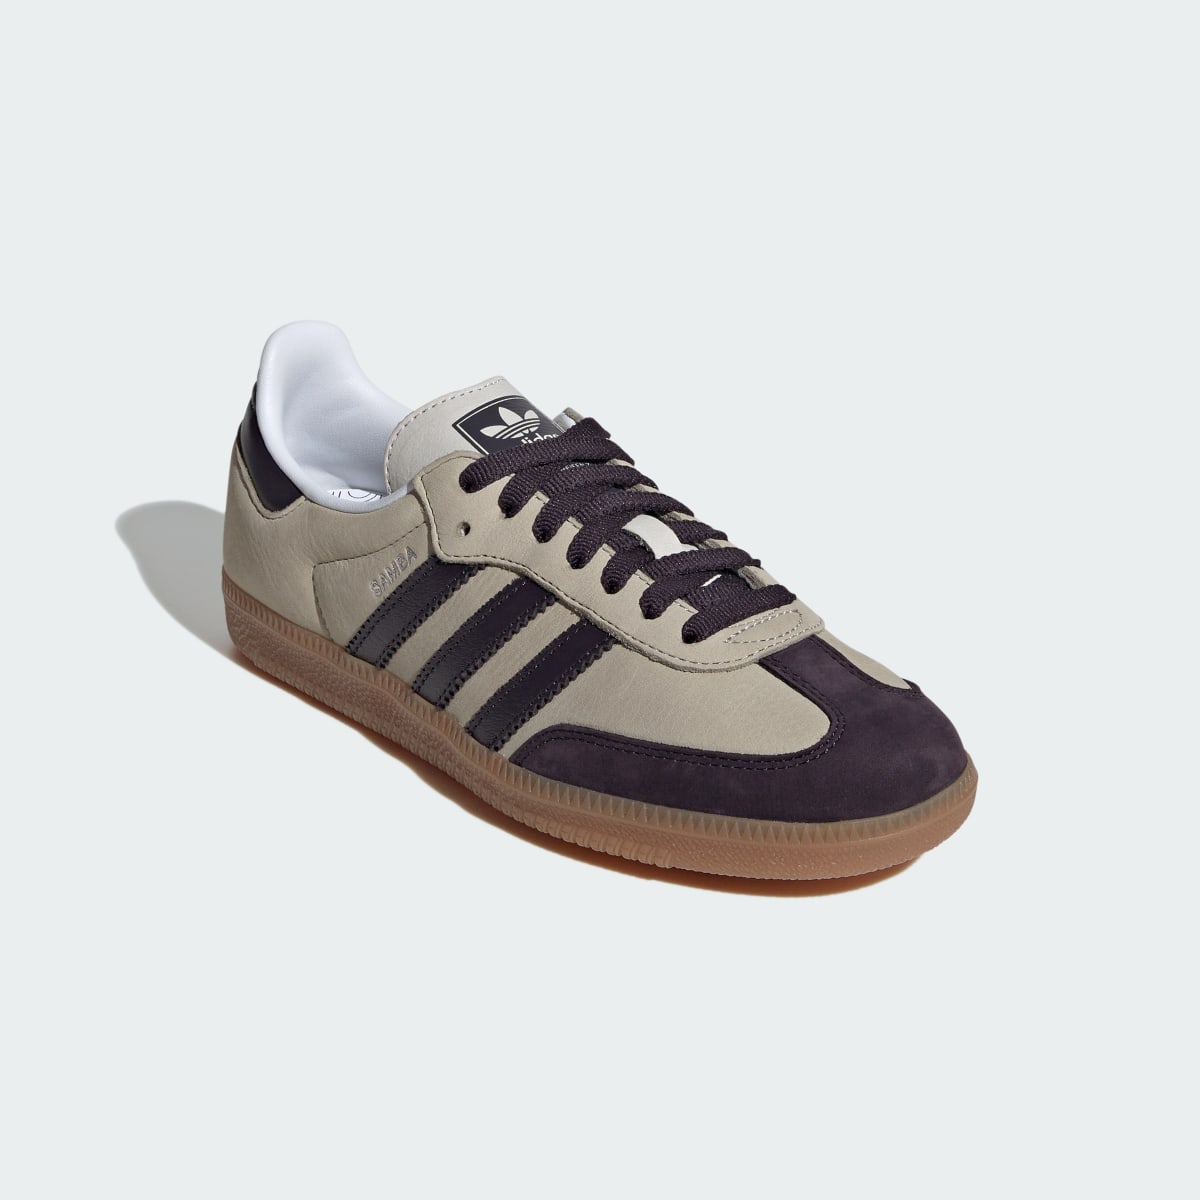 Adidas Samba OG Shoes. 5